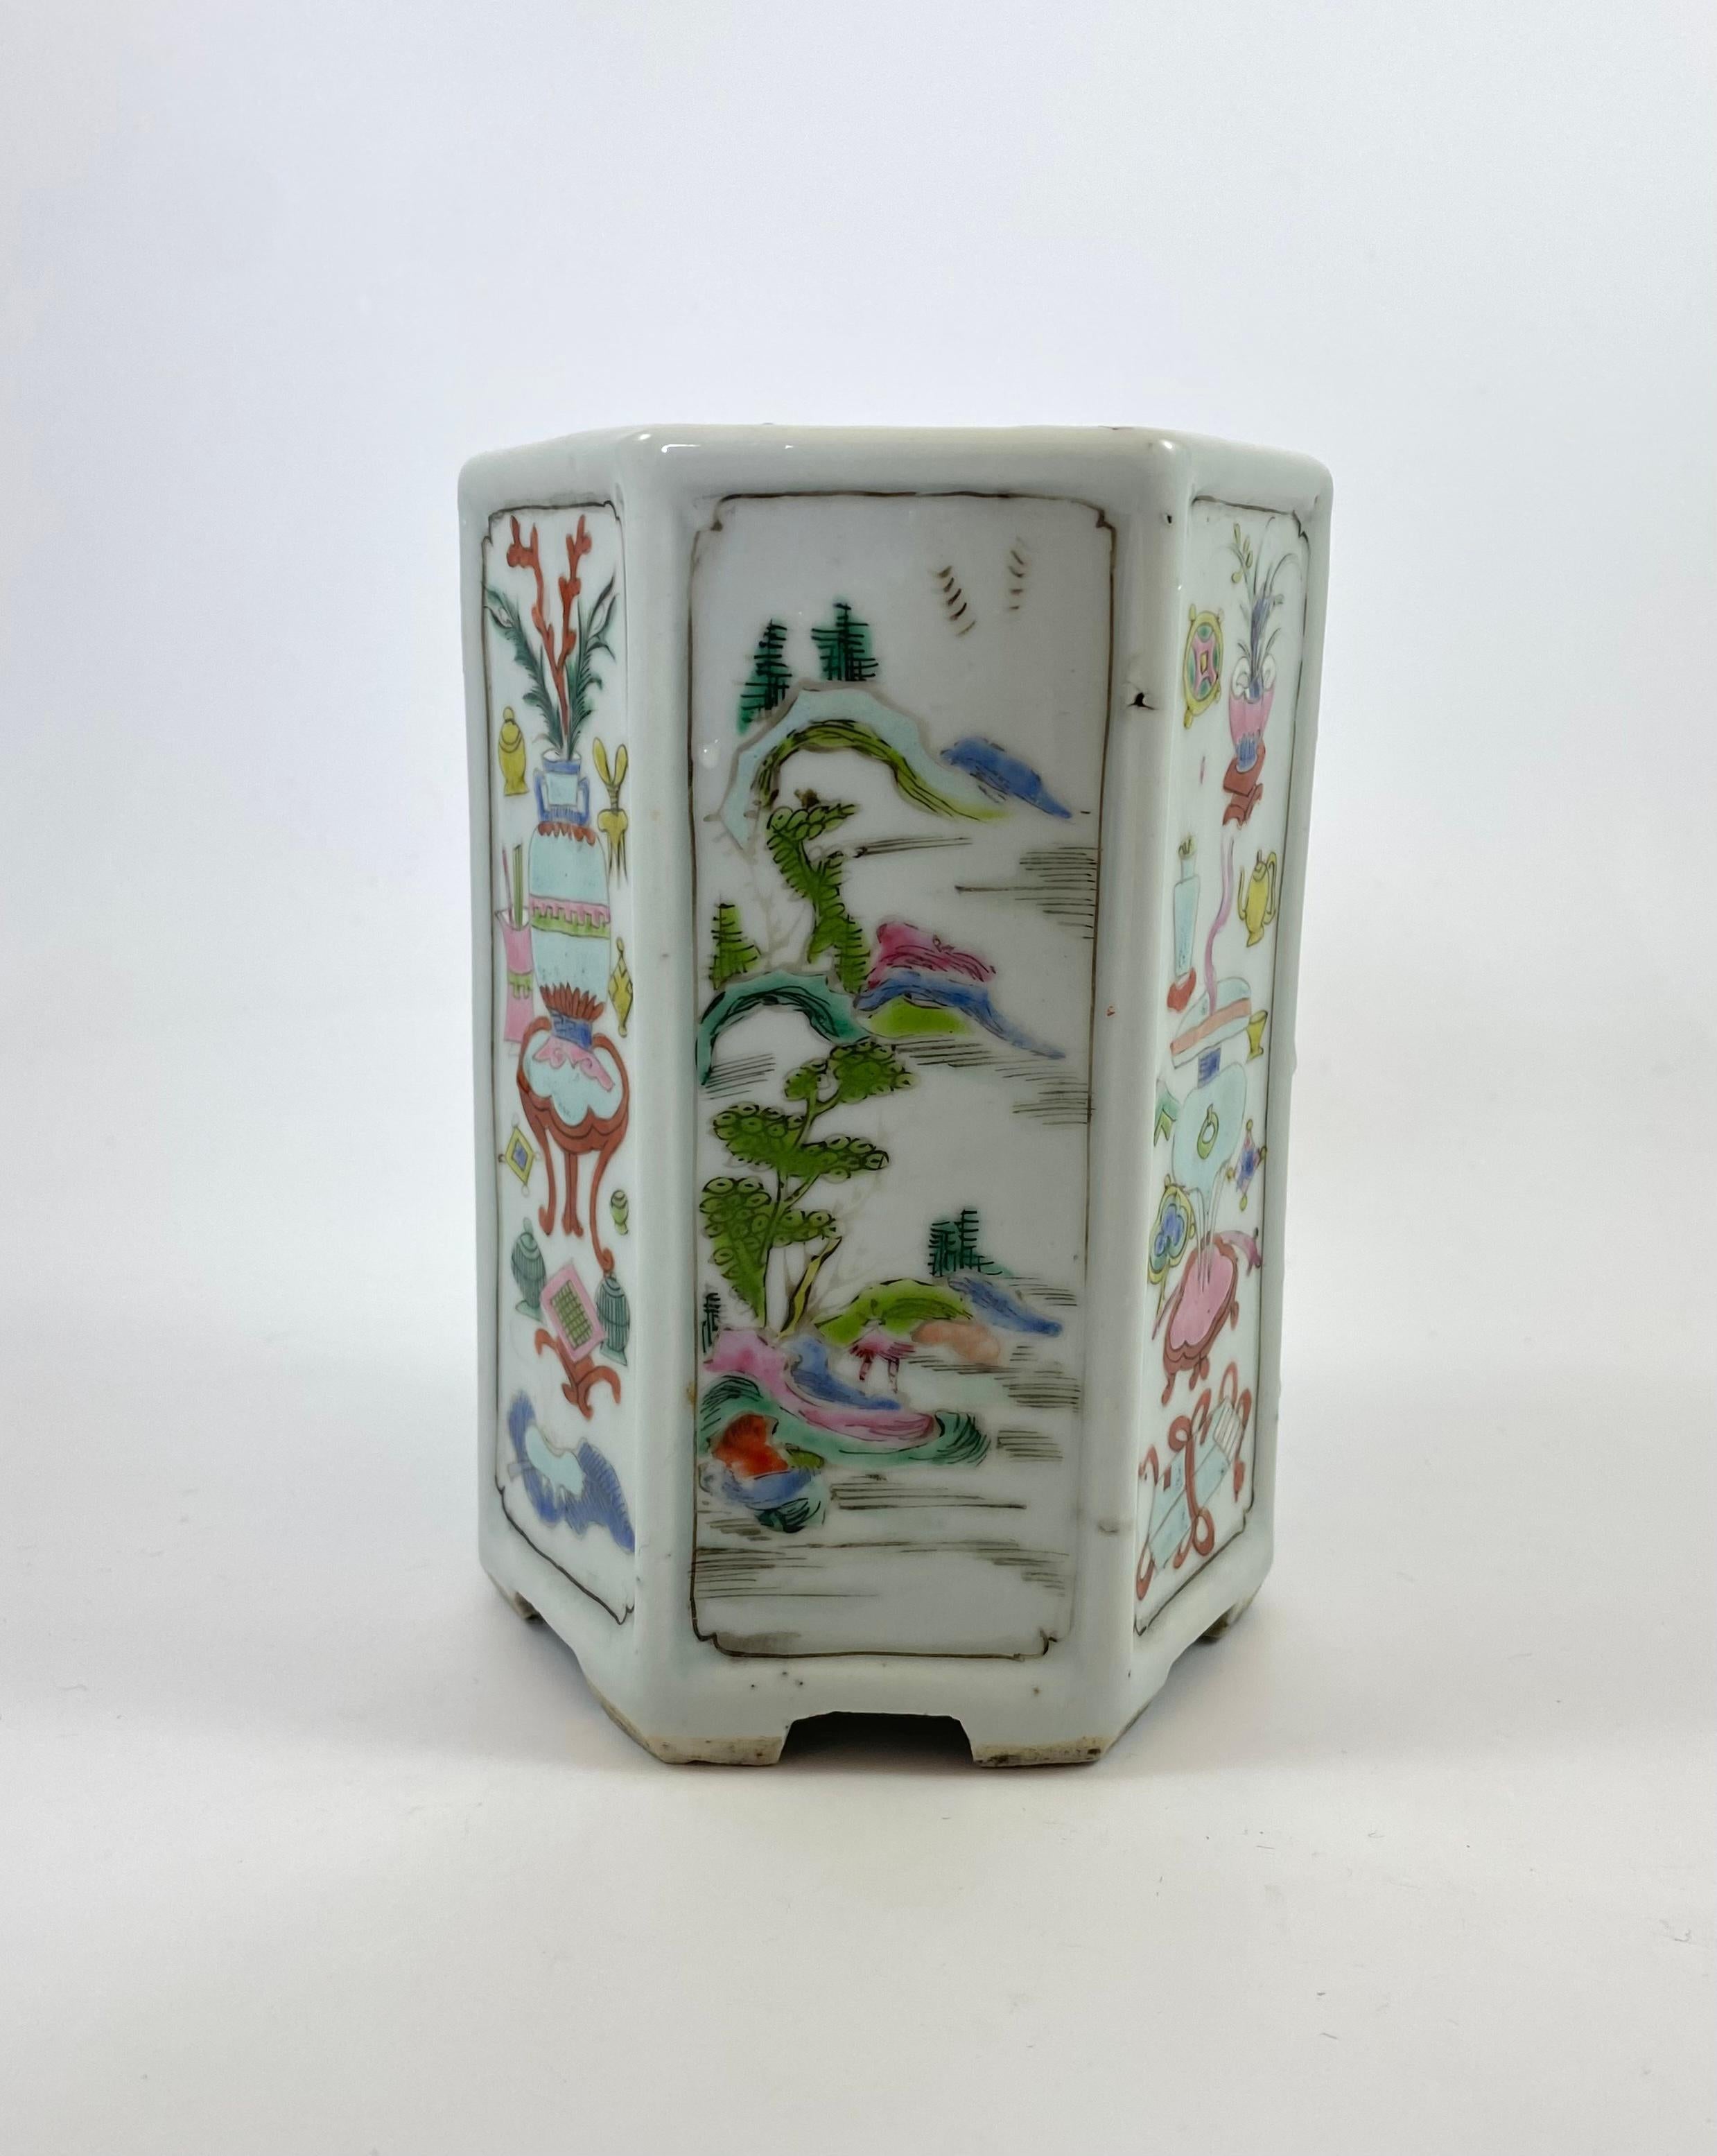 Qing Chinese Porcelain Brush Pot, c. 1730. Yongzheng Period